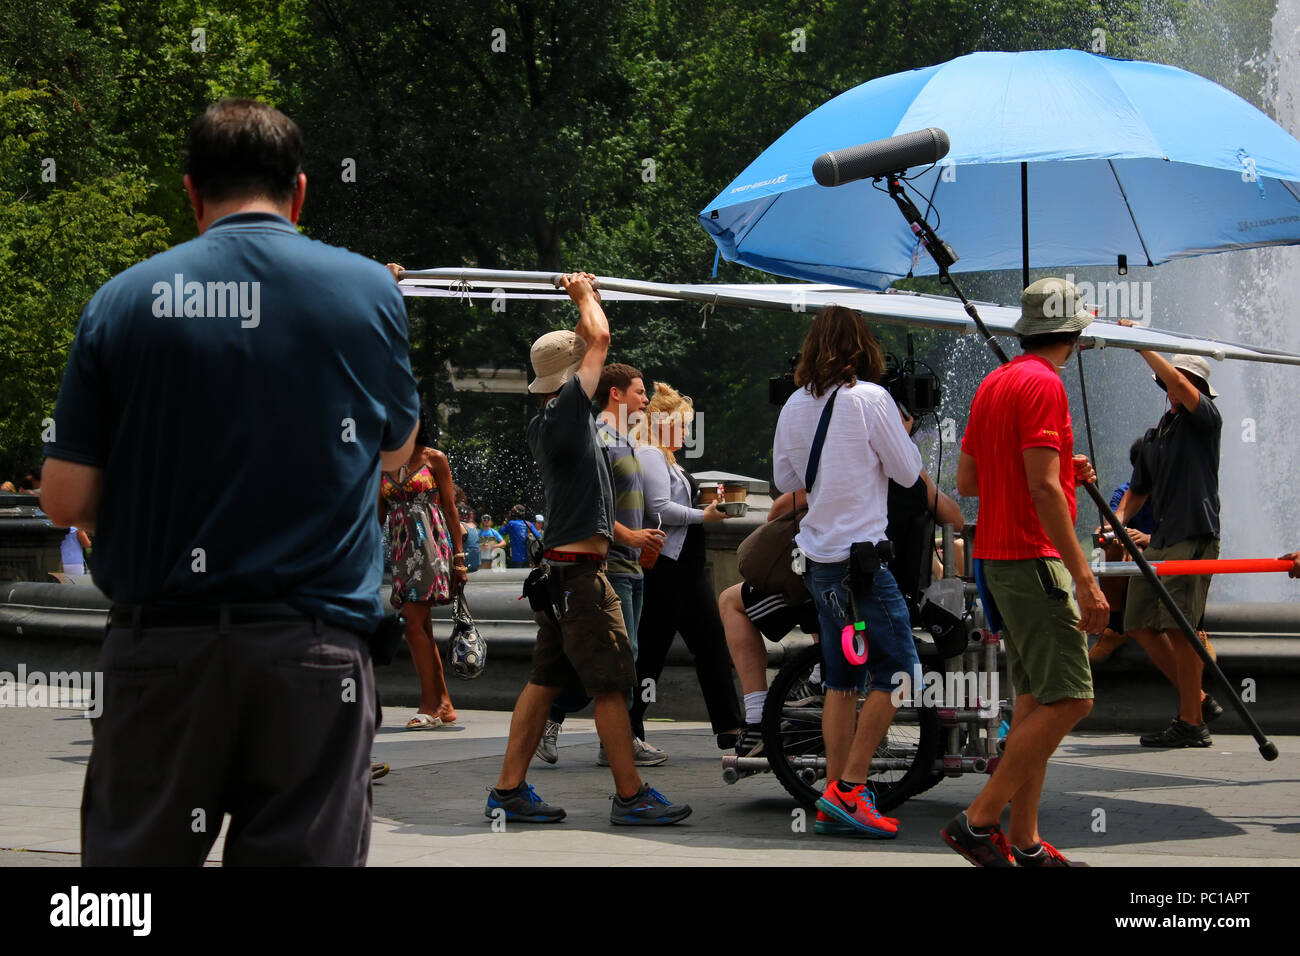 NEW YORK, NY - 11 de julio: Películas y tripulación de no es romántico como fue filmada en Washington Square Park en Manhattan, el 11 de julio de 2017 en Nueva York Foto de stock